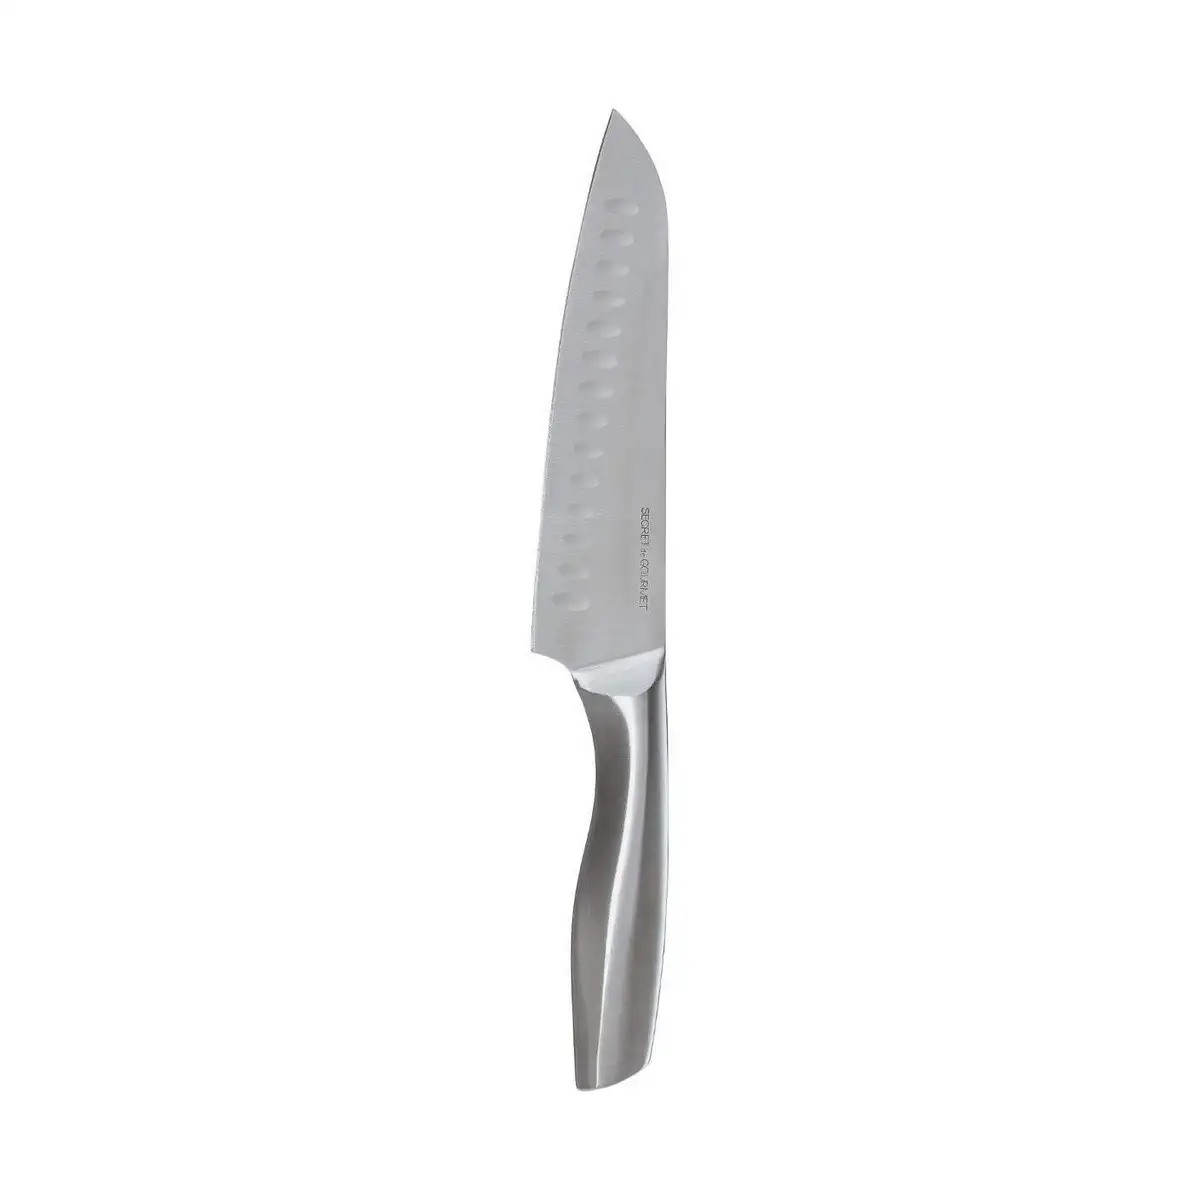 Couteau santoku secret de gourmet acier inoxydable 31 5 cm _6467. Bienvenue sur DIAYTAR SENEGAL - Où Chaque Détail compte. Plongez dans notre univers et choisissez des produits qui ajoutent de l'éclat et de la joie à votre quotidien.